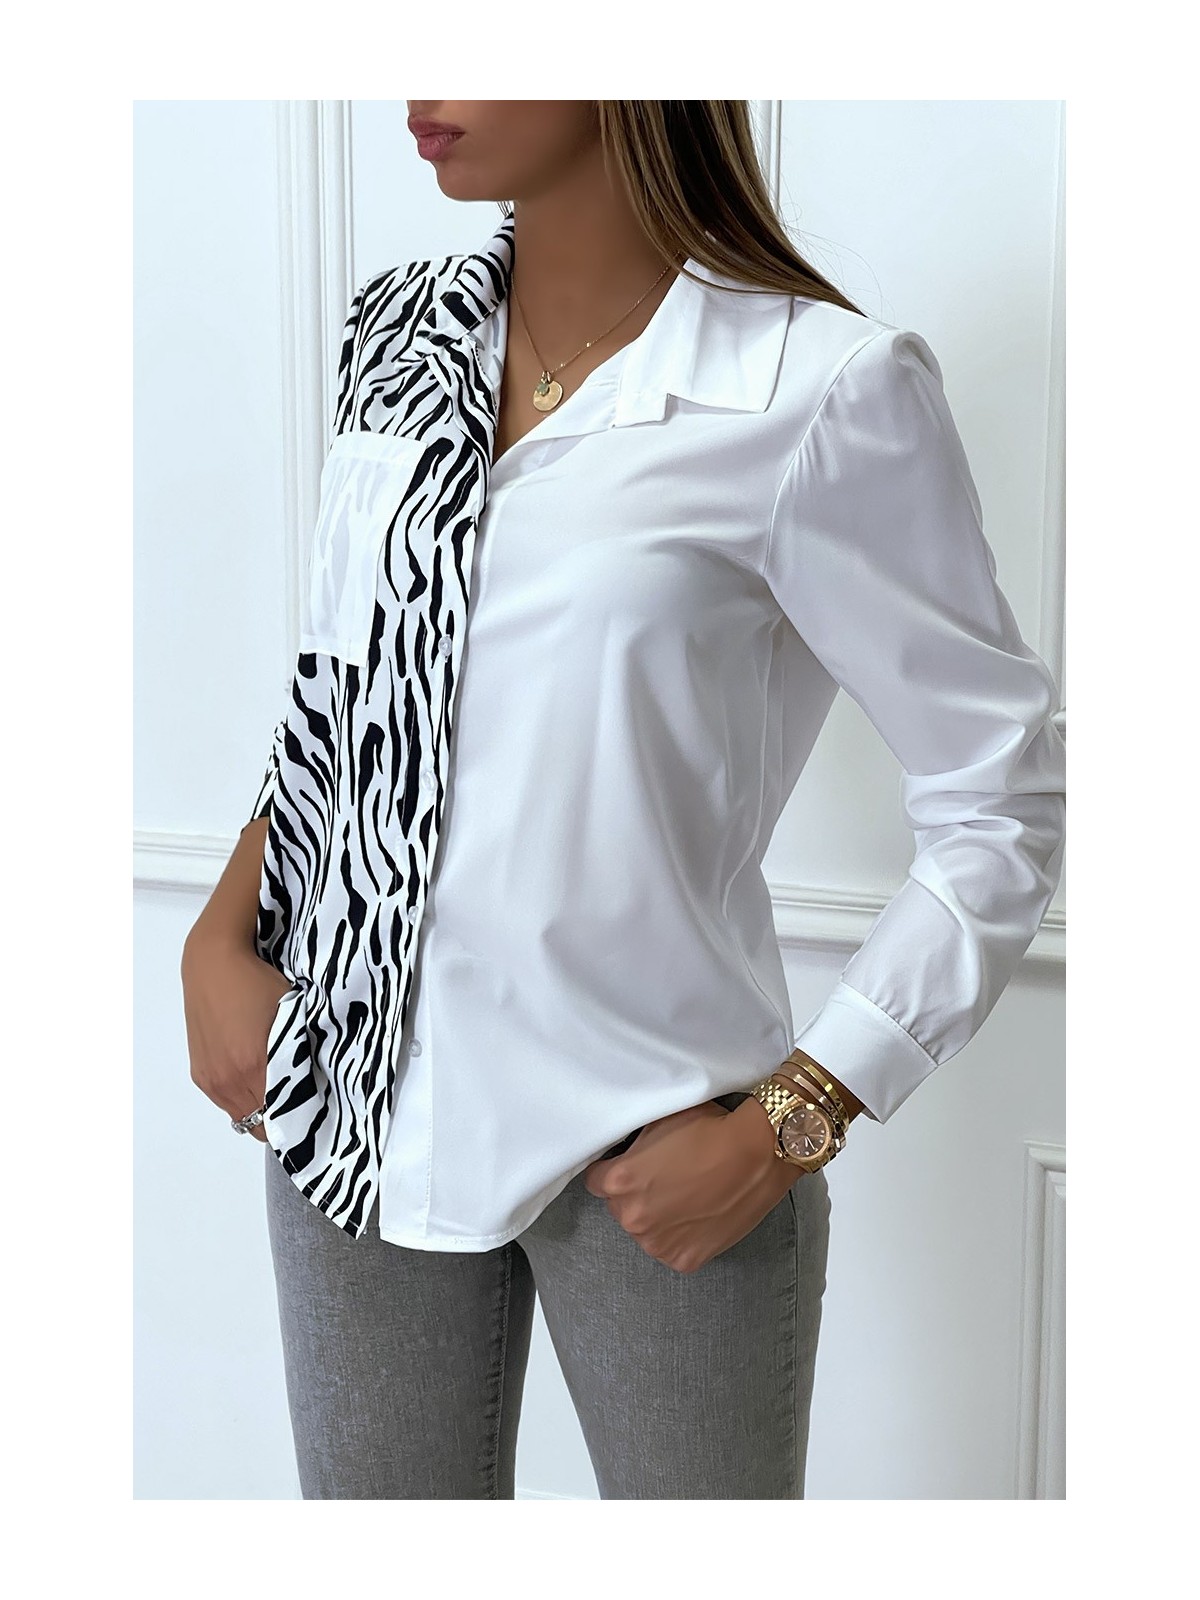 Chemise bicolor à carreaux blanc et noir zebré